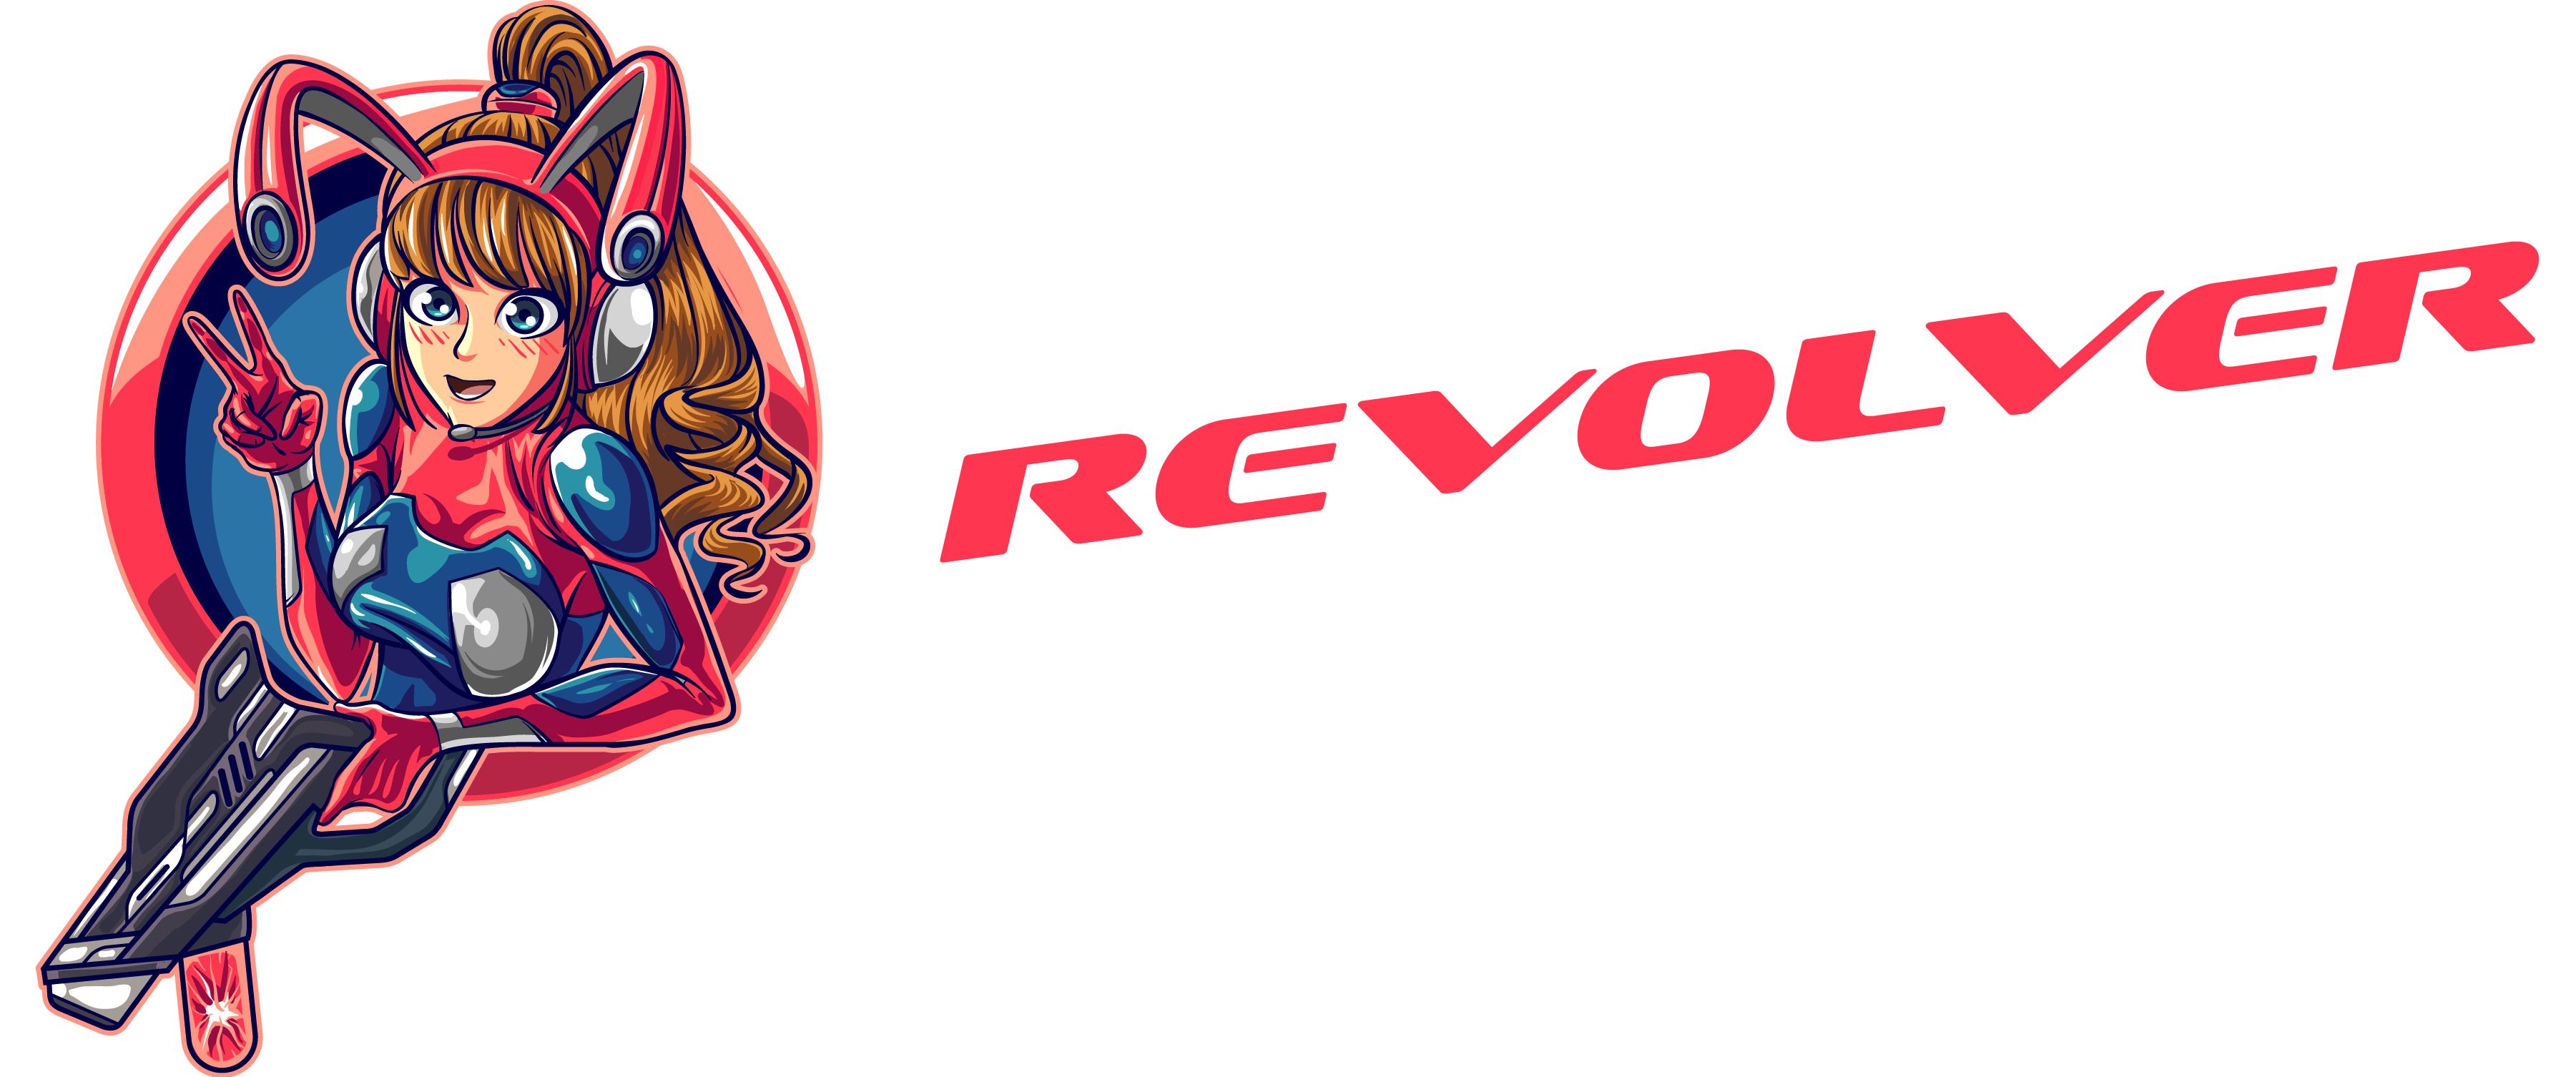 Revolver Tech